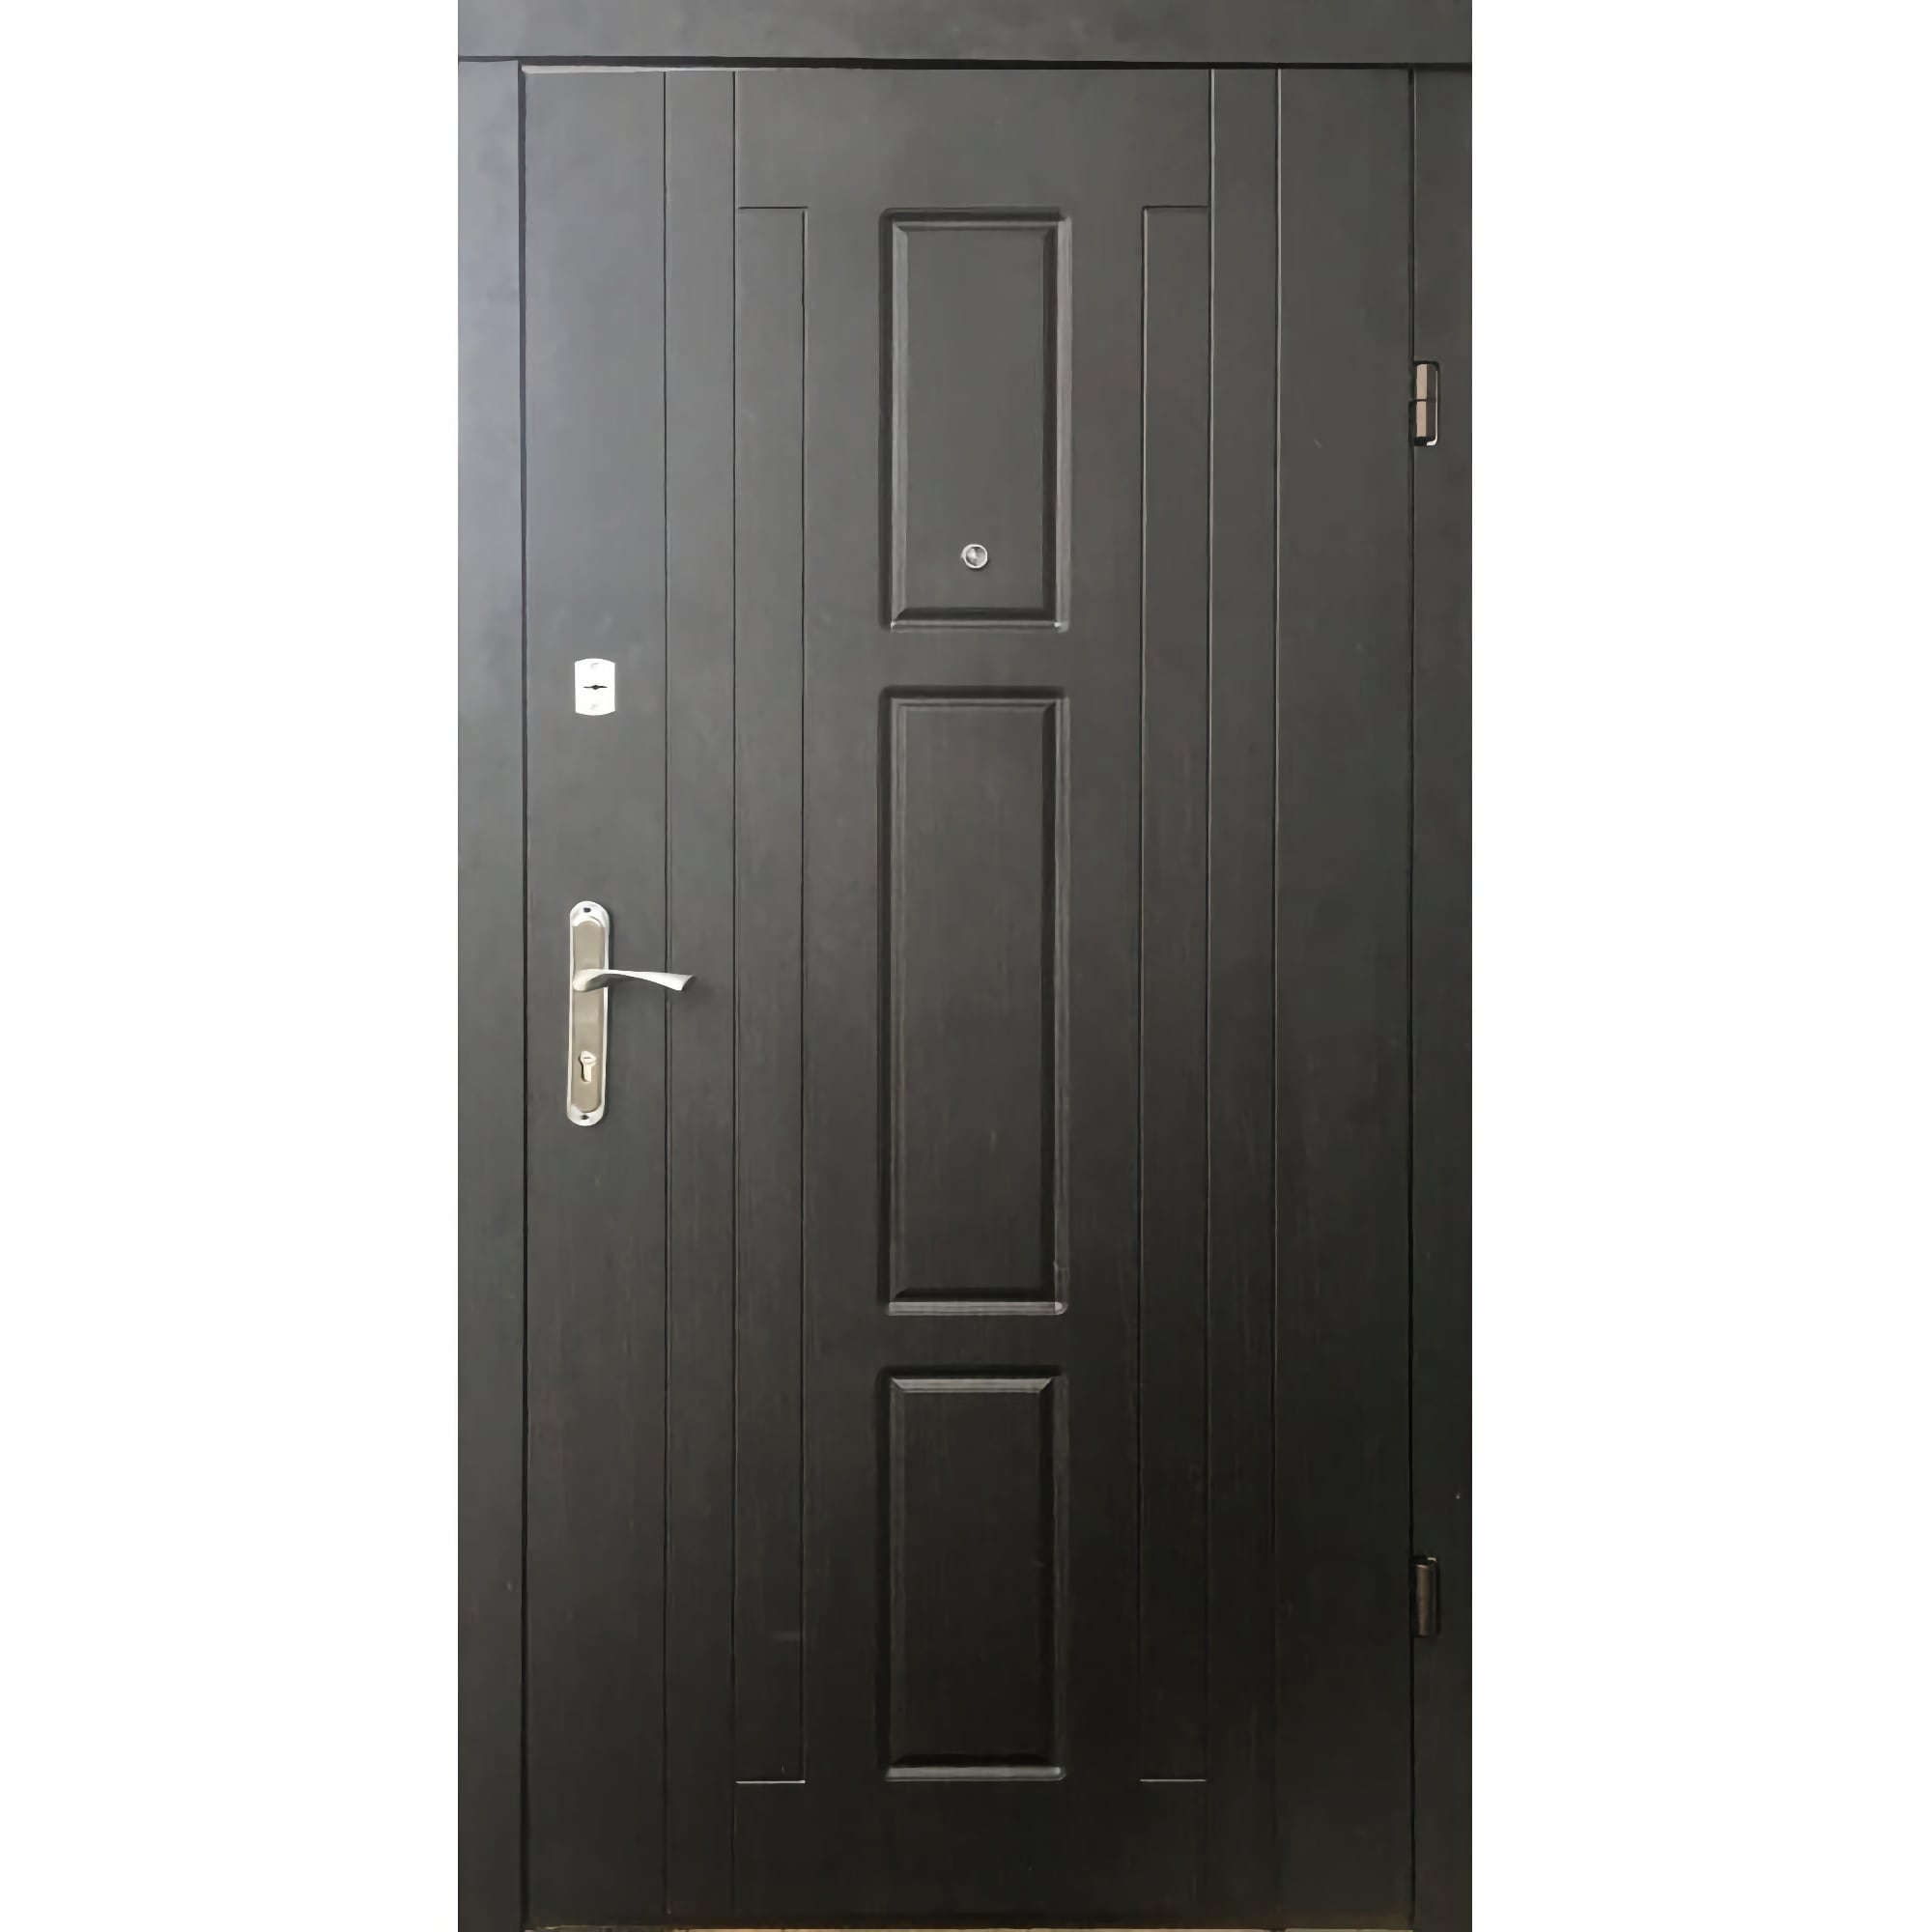 Недорогие входные двери • Трояна 960